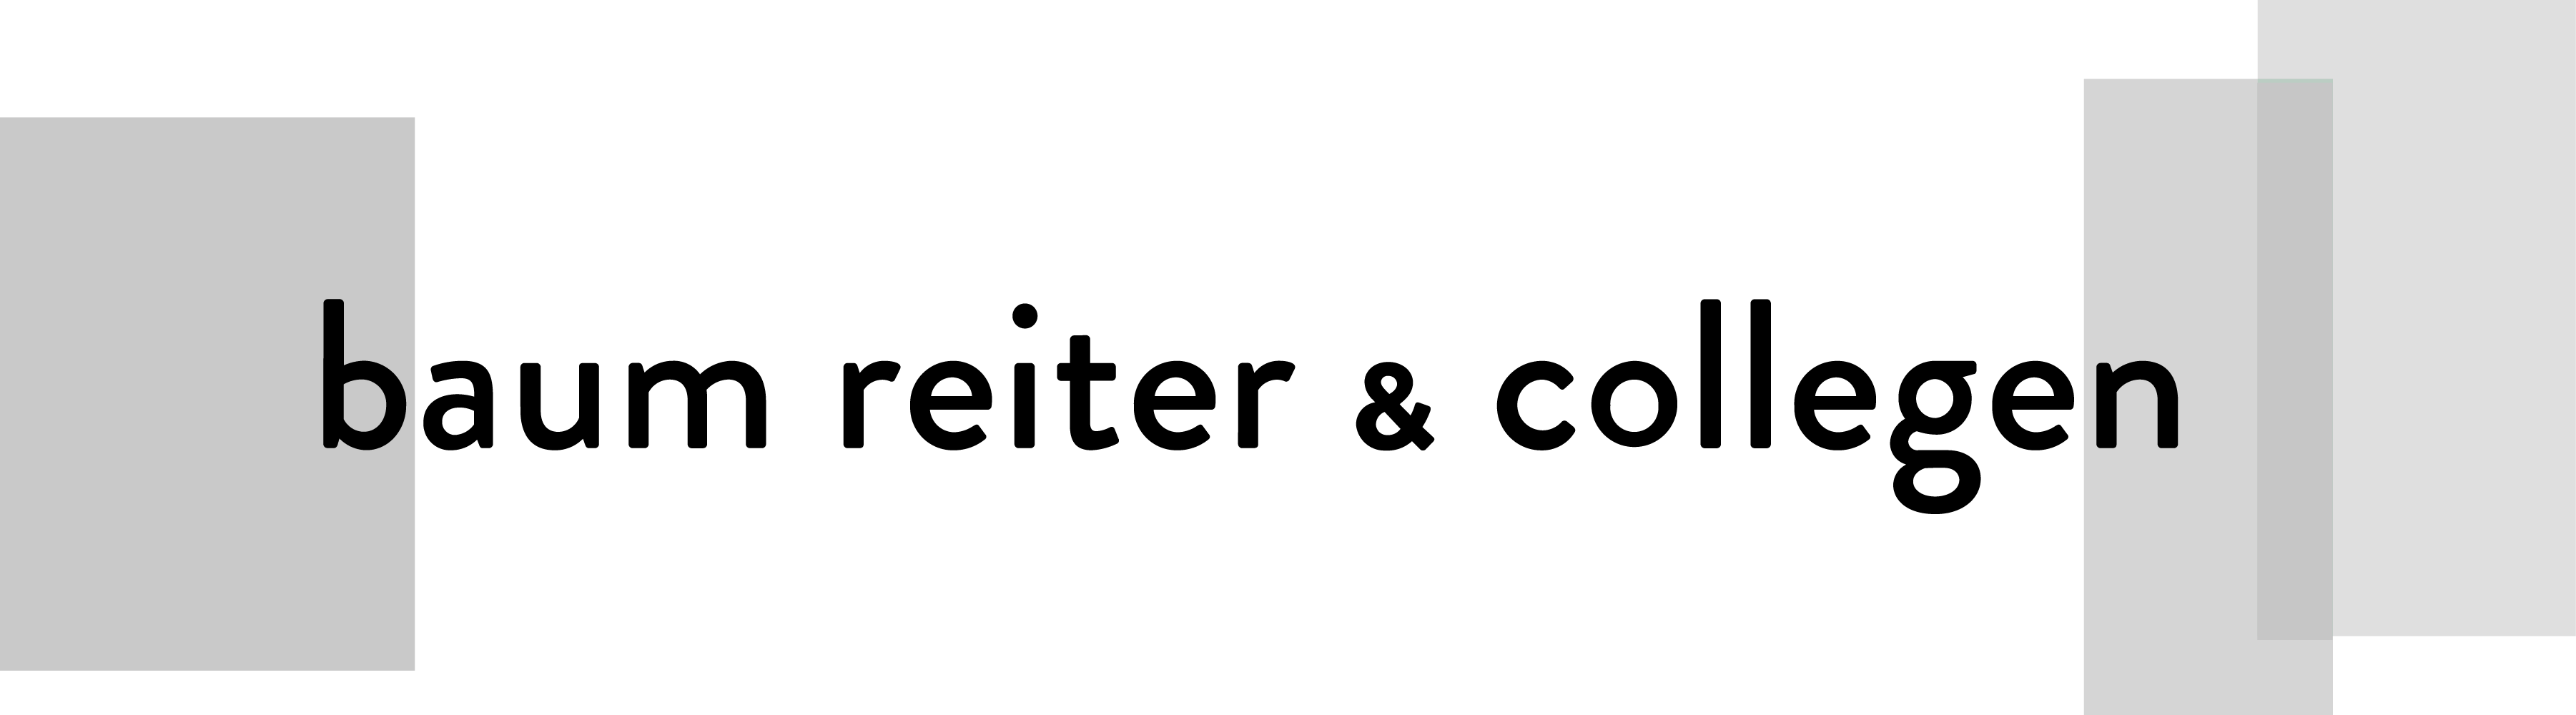 Braum Reiter & Collegen Logo